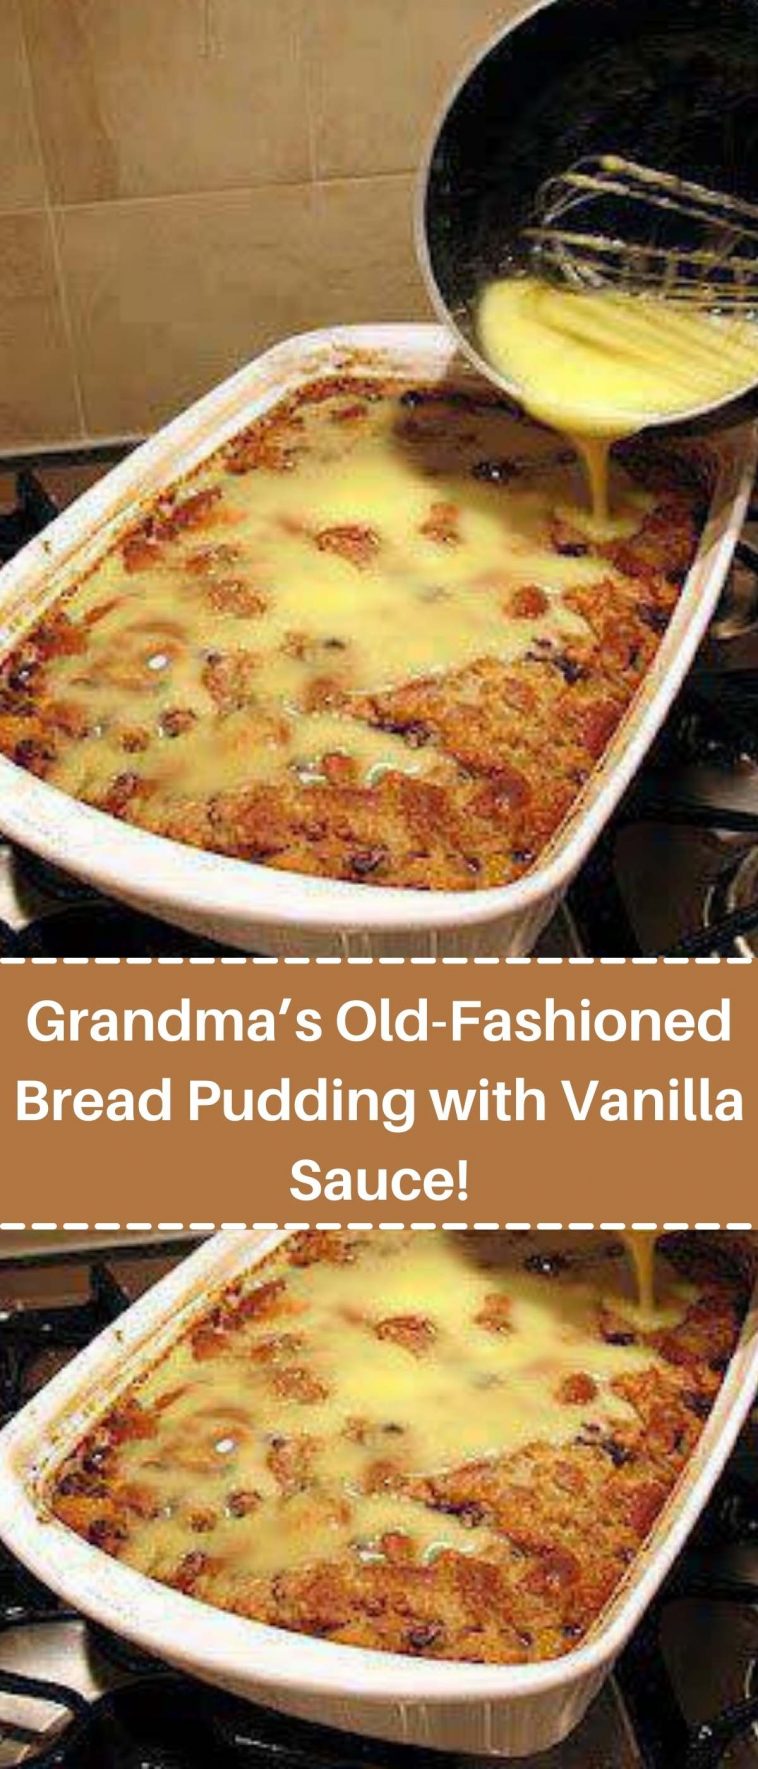 Grandma’s Old-Fashioned Bread Pudding with Vanilla Sauce!